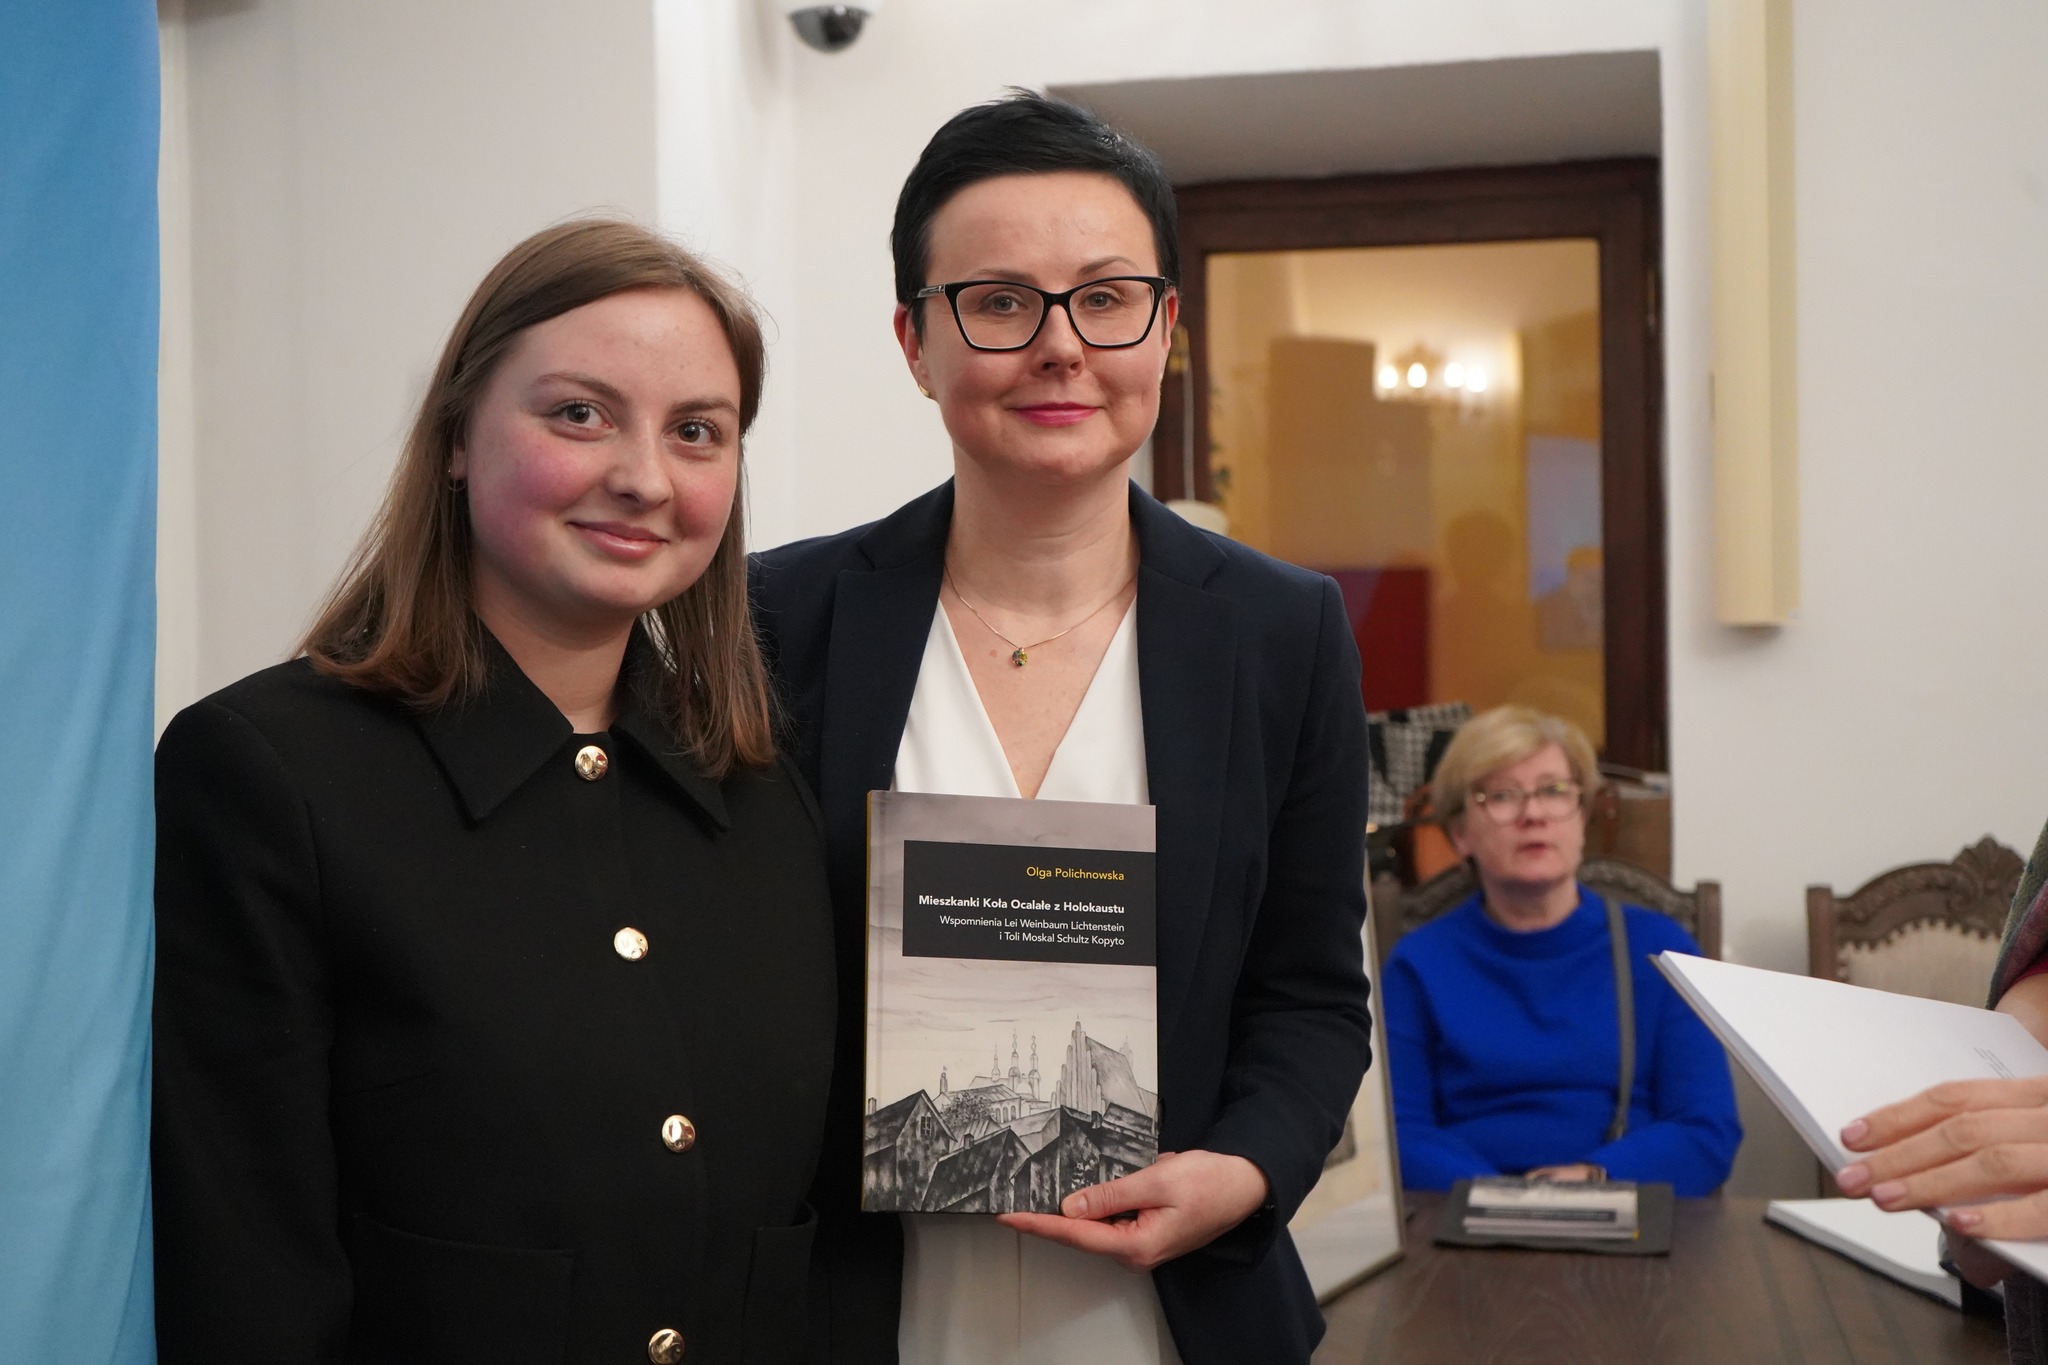 Sekretarz Miasta Monika Ciesielska z egzemplarzem książki w dłoniach i autorka Olga Polichnowska